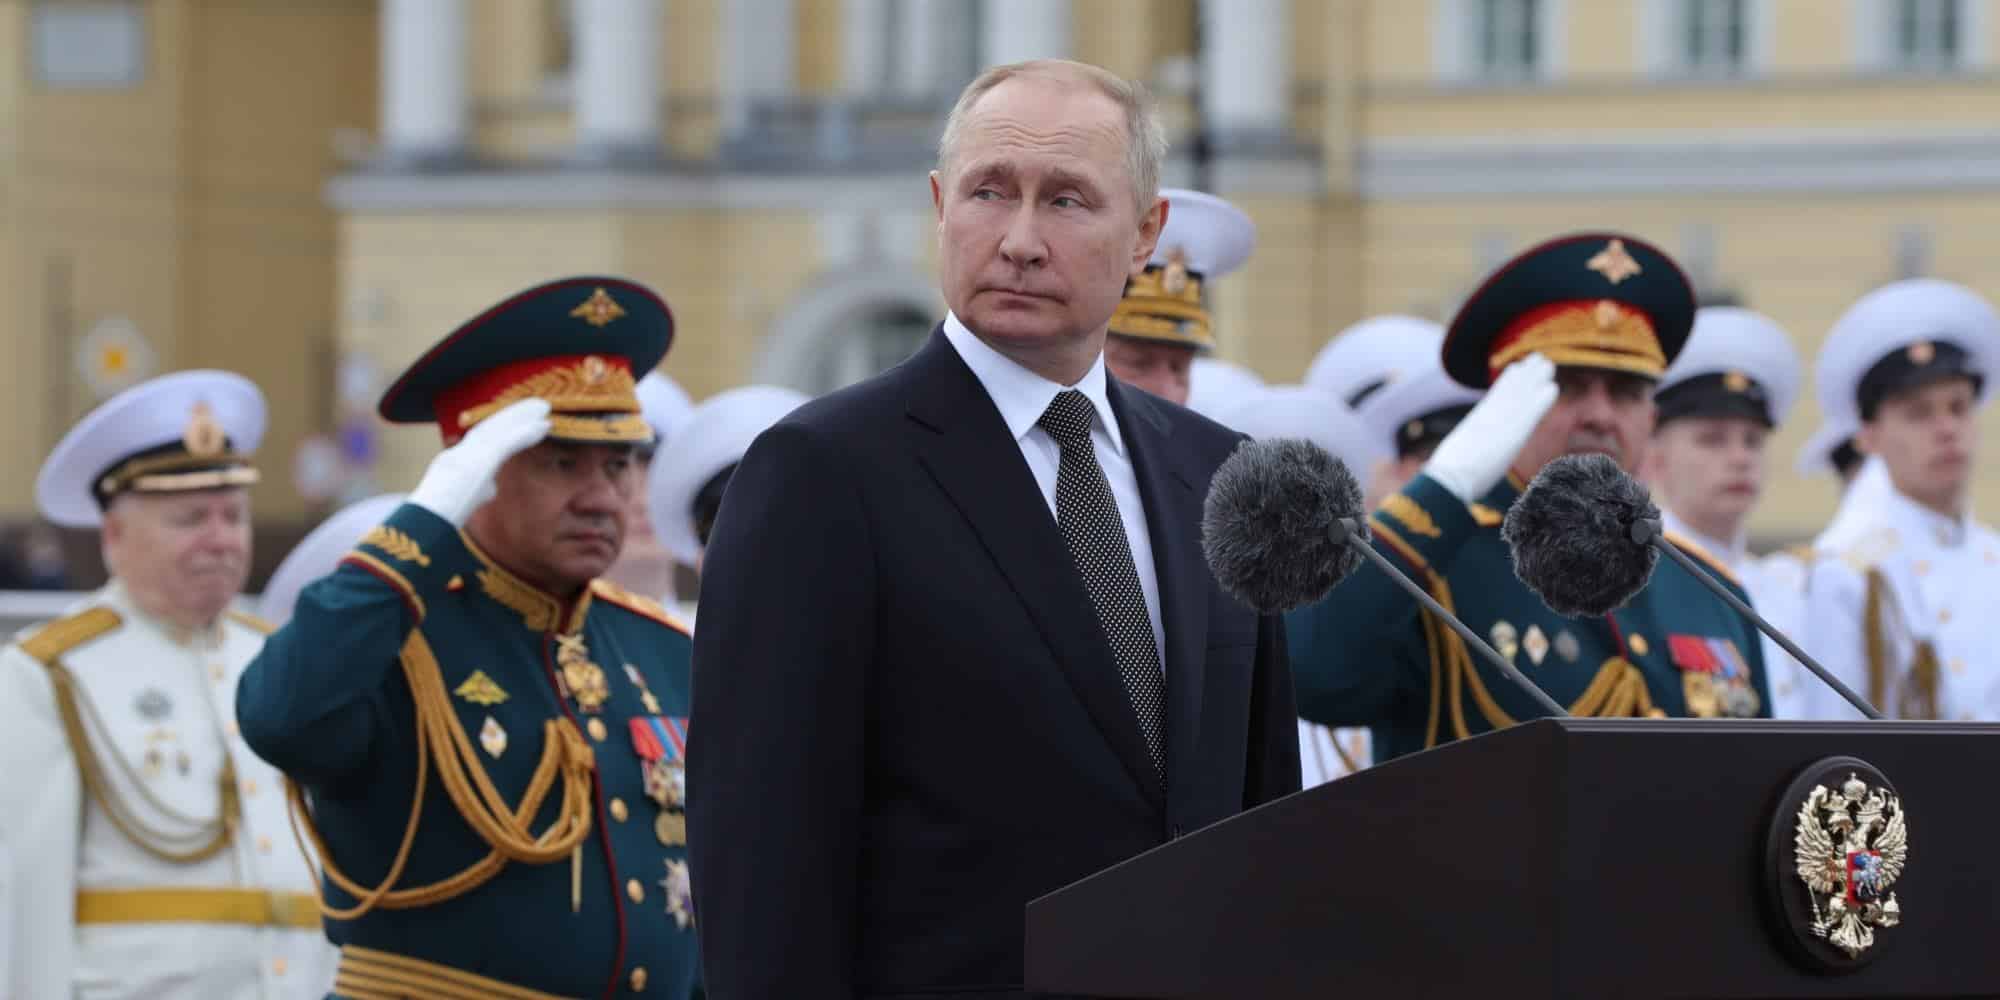 Ο Ρώσος πρόεδρος Βλαντιμίρ Πούτιν και ο υπουργός Άμυνας της χώρας Σεργκέι στην ναυτική παρέλαση για την Ημέρα του Ρωσικού Ναυτικού στην Αγία Πετρούπολη